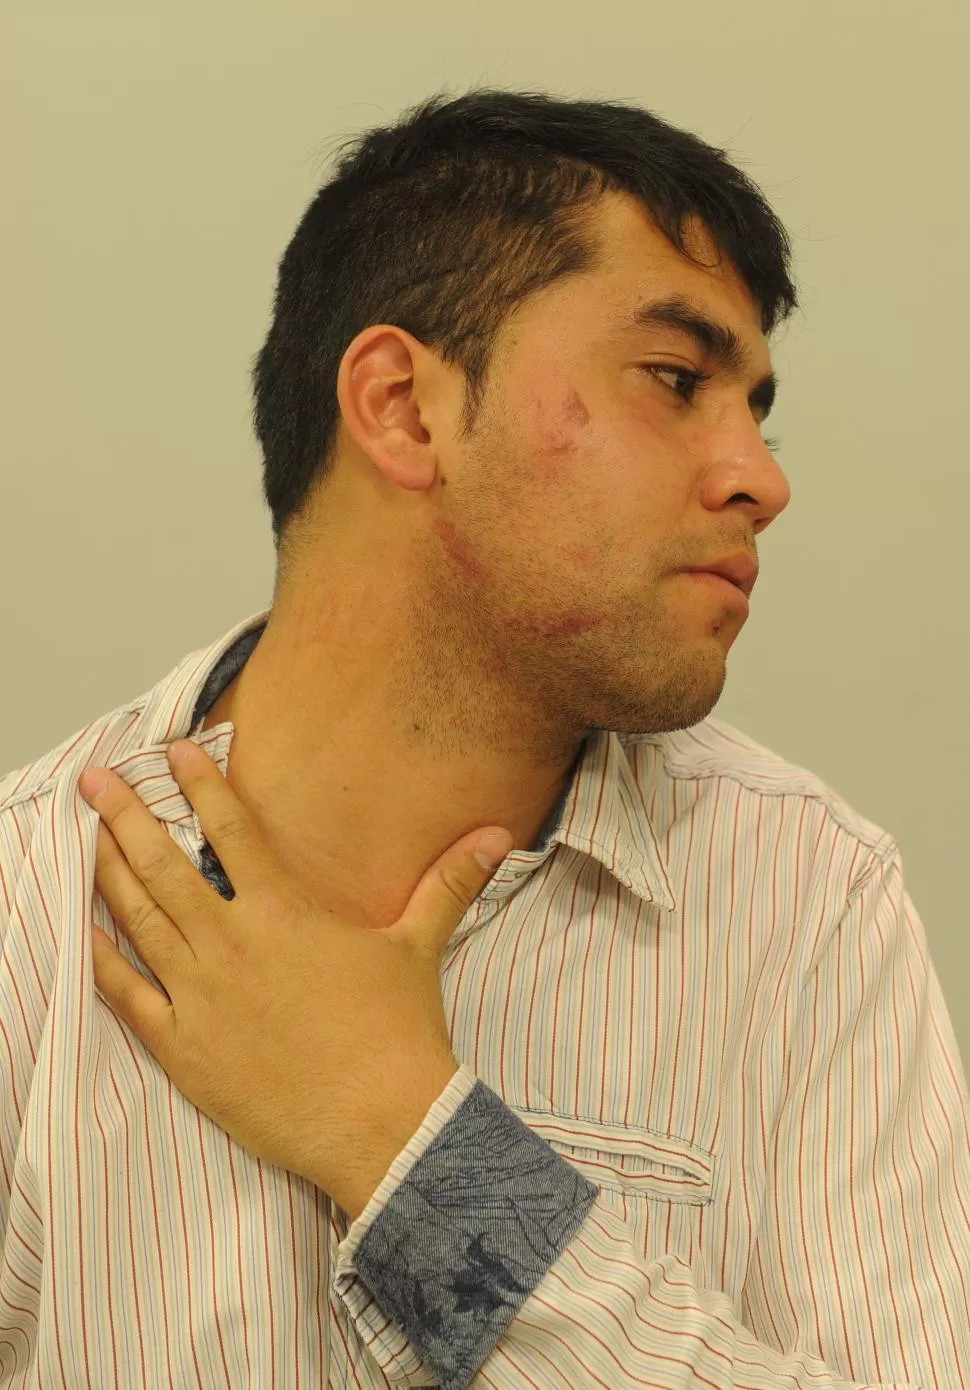 HERIDAS. Jorge Soto sufrió golpes y cortes en la cara, el cuello y el tórax. la gaceta / foto de héctor peralta